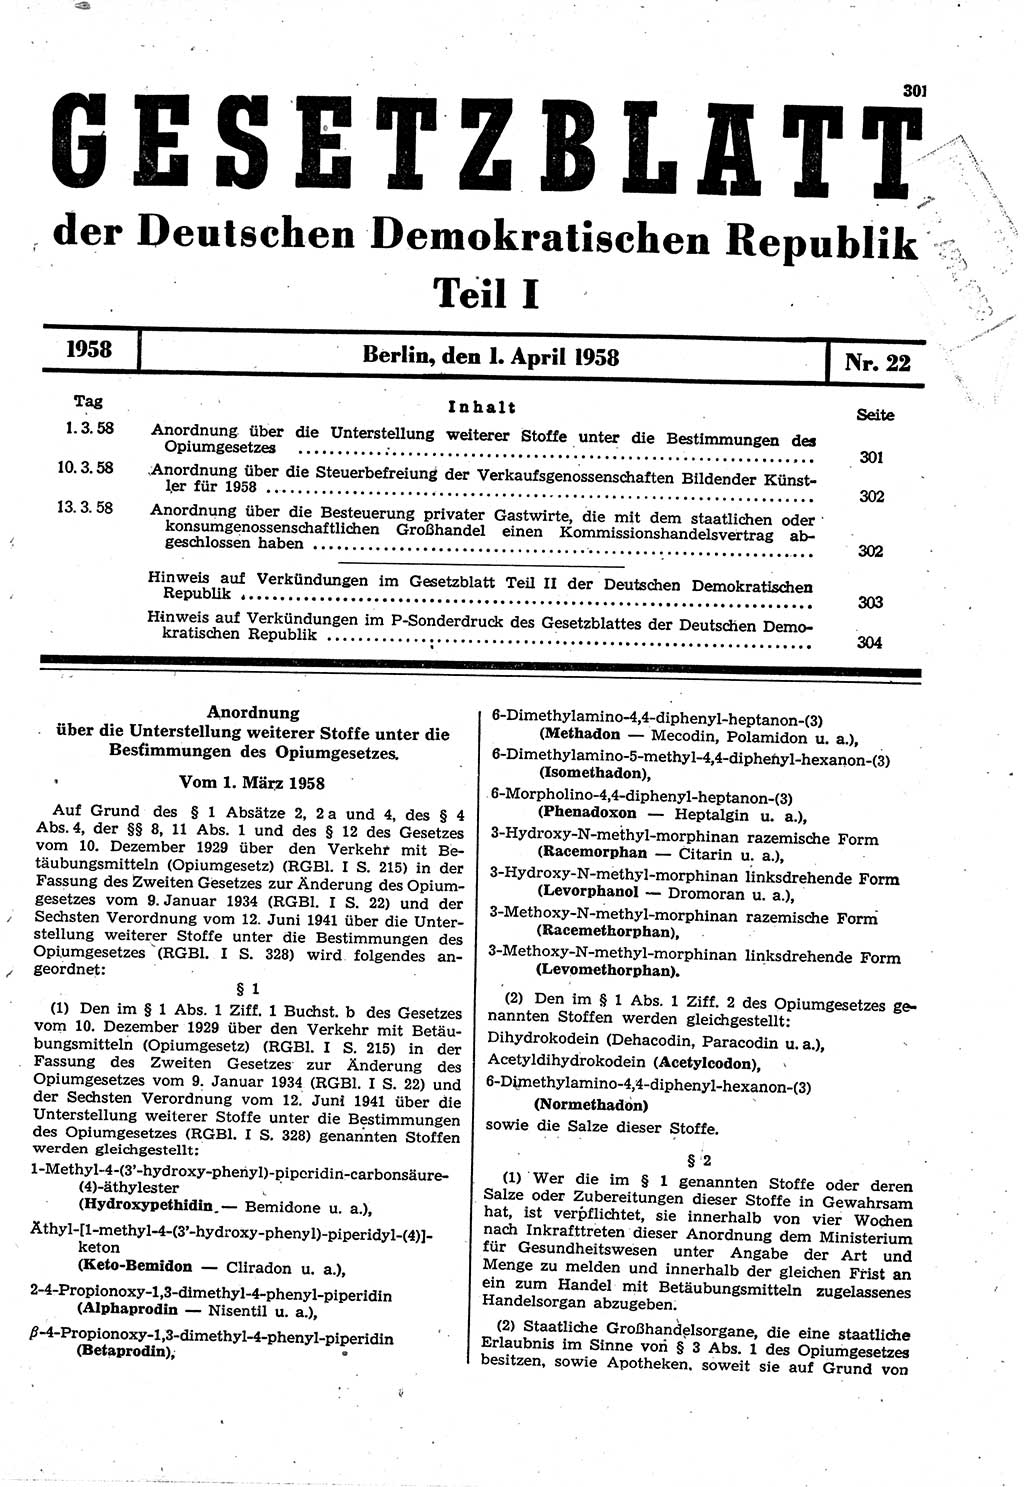 Gesetzblatt (GBl.) der Deutschen Demokratischen Republik (DDR) Teil Ⅰ 1958, Seite 301 (GBl. DDR Ⅰ 1958, S. 301)